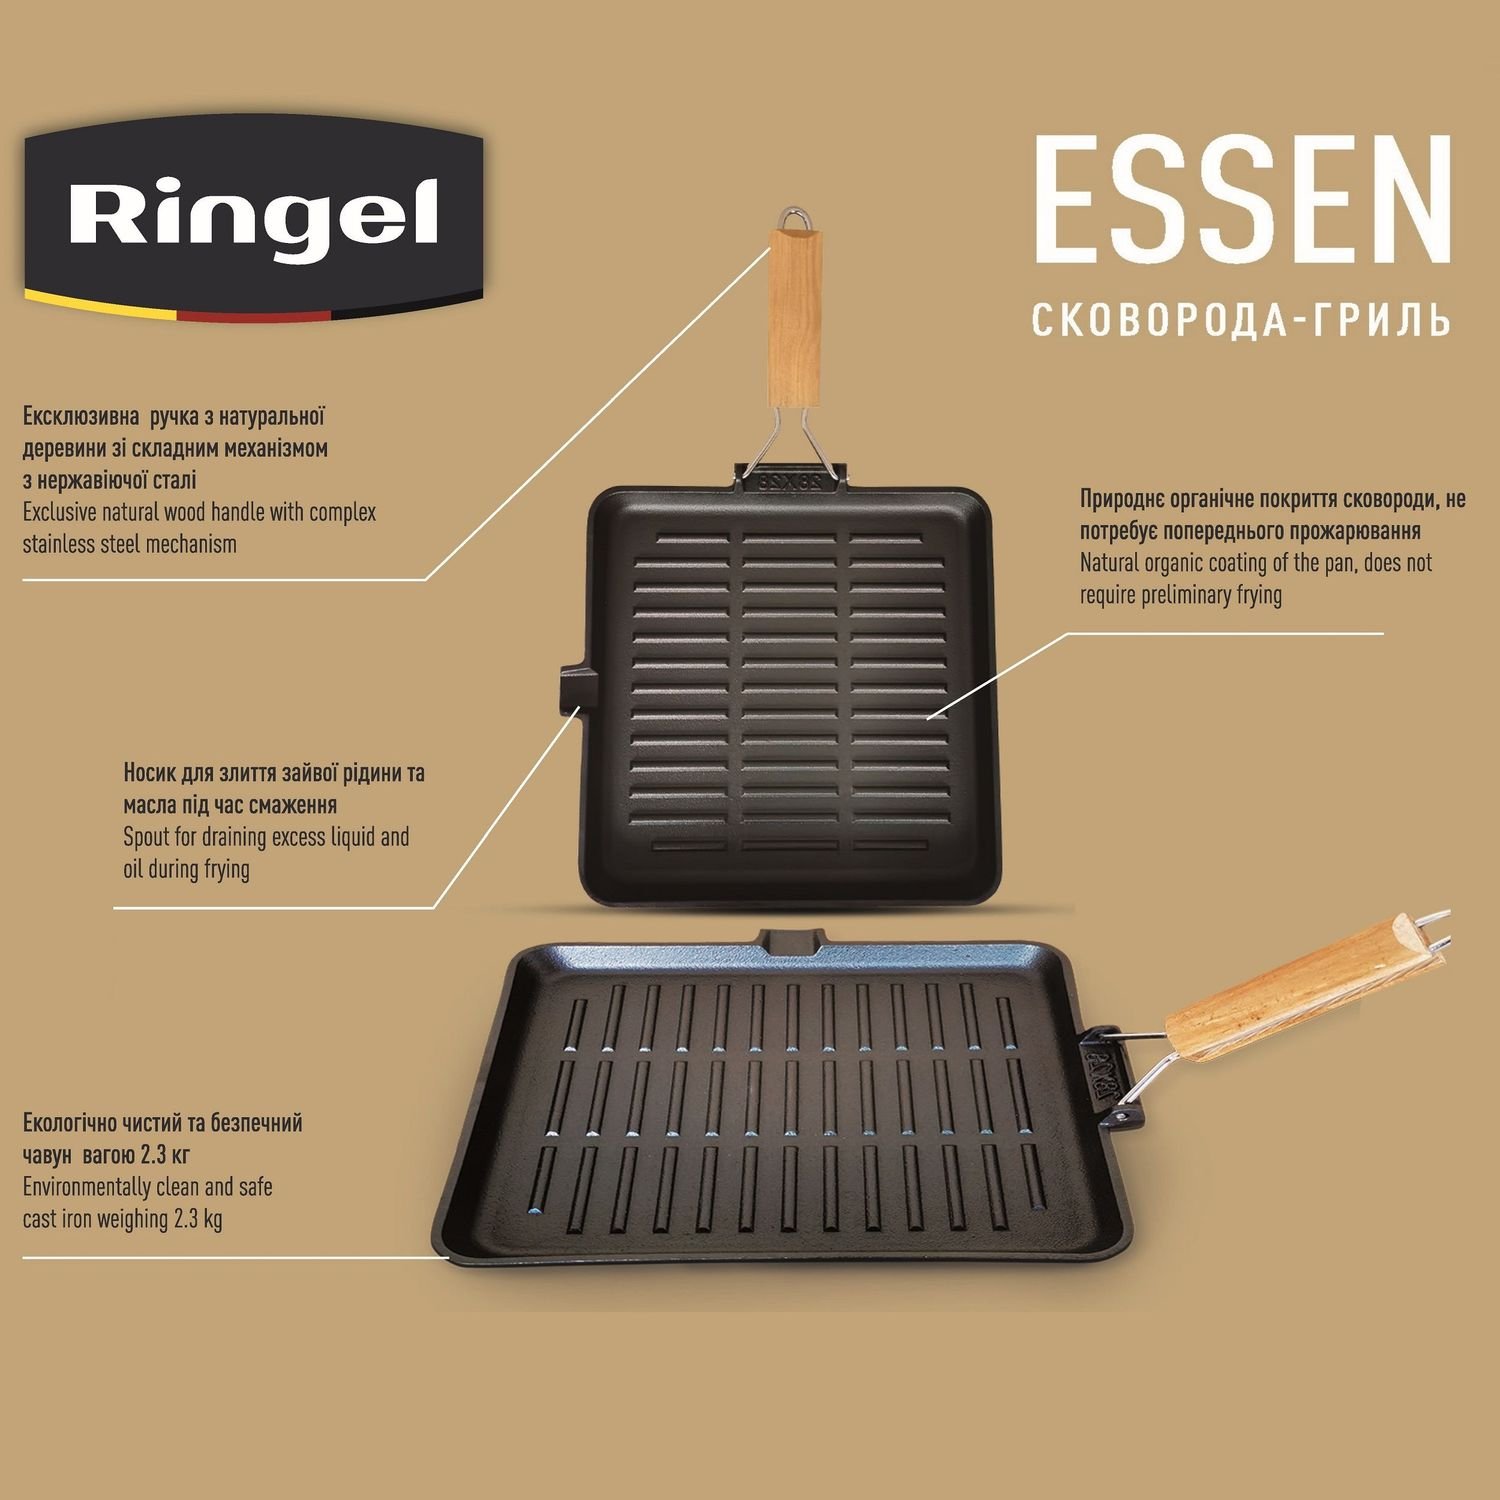 Сковорода-гриль Ringel Essen, чугунная с ручкой, 28 см (RG-2308-28*28) - фото 4